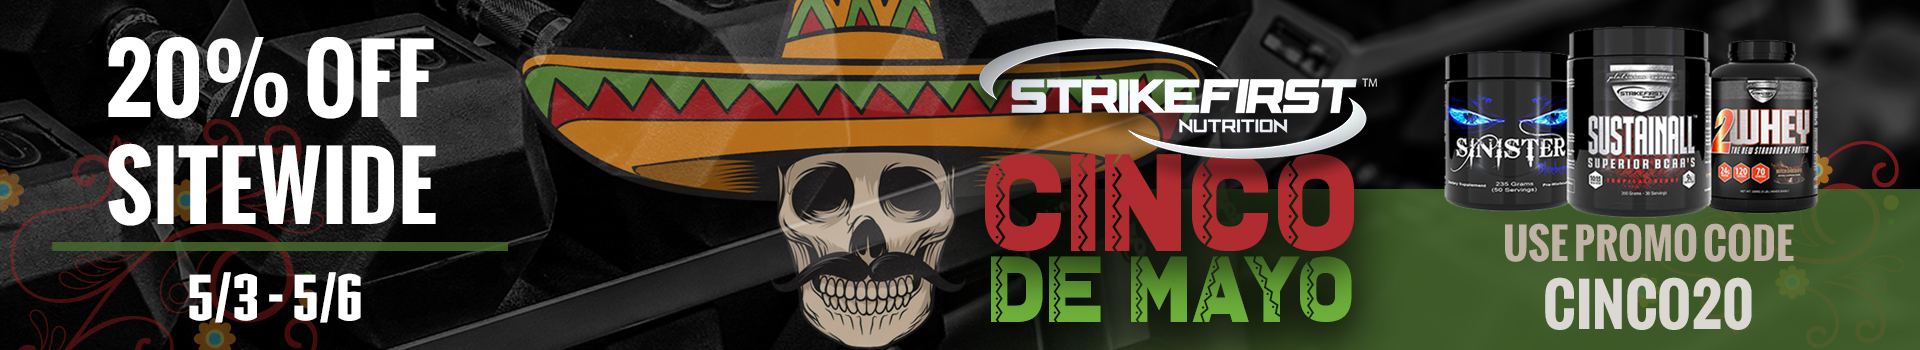 Strikefirst_CincoDeMayo2019_webbanner